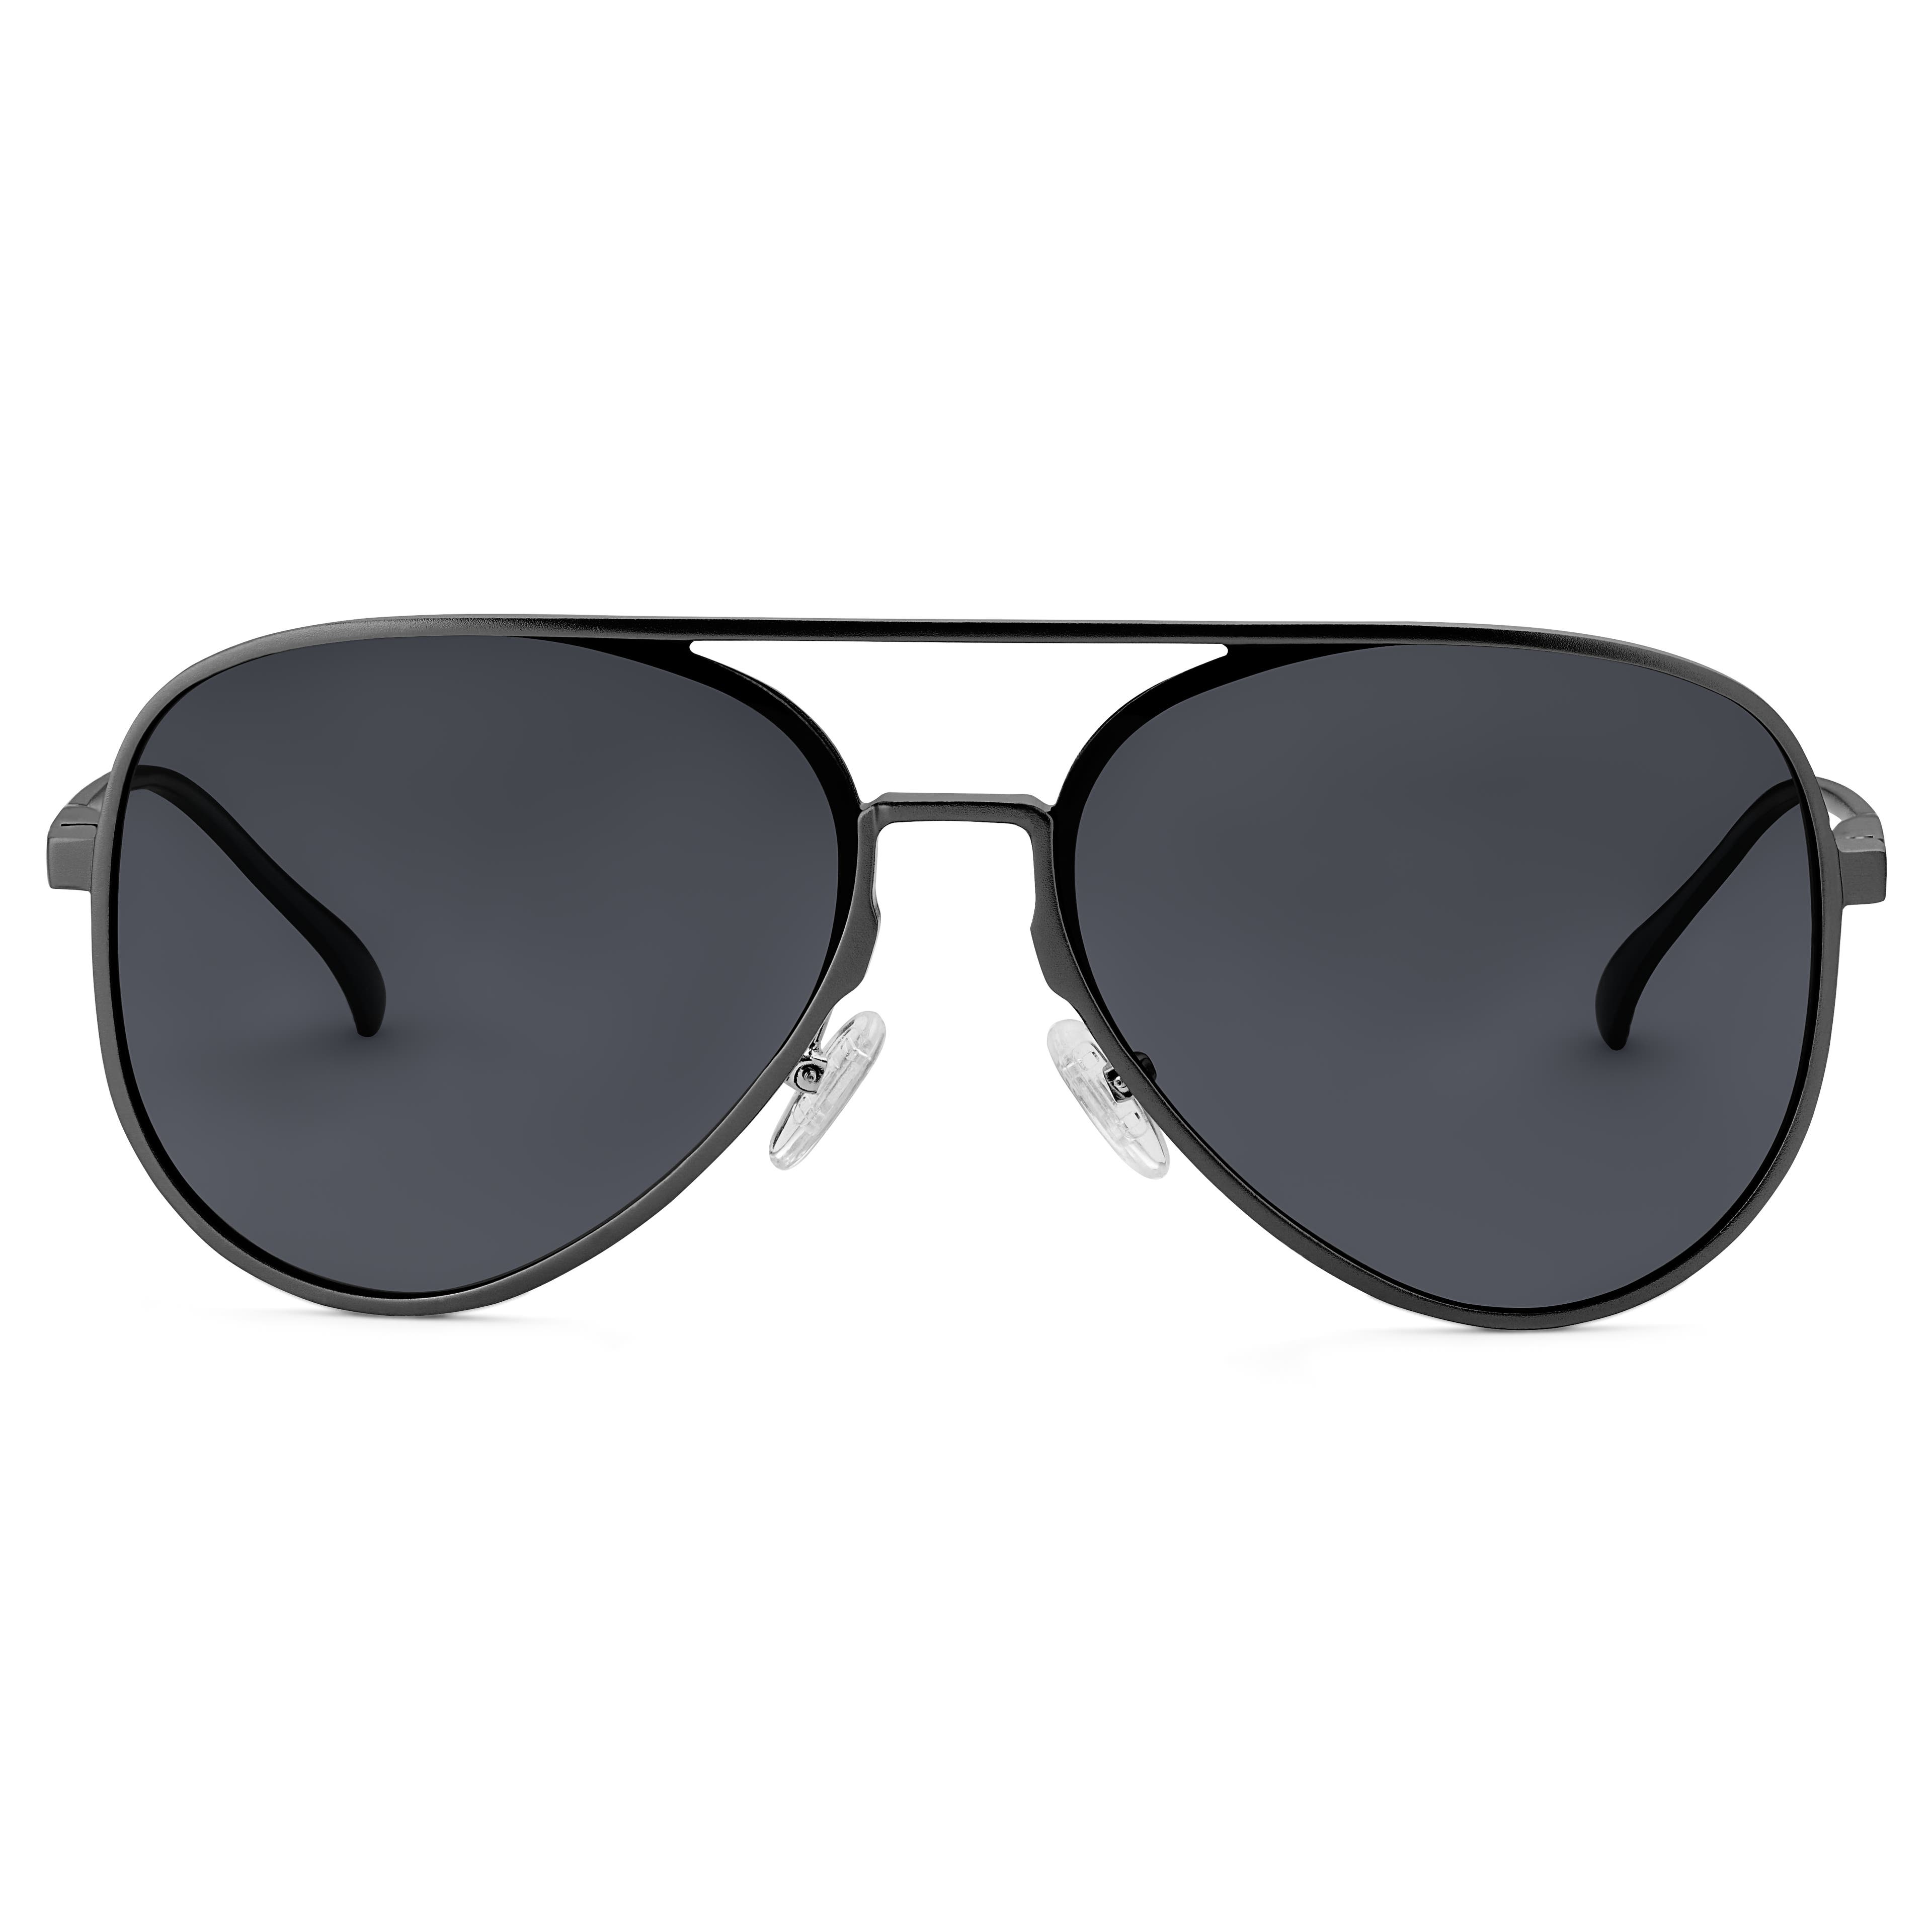 Black Polarised Aluminum Aviator Sunglasses